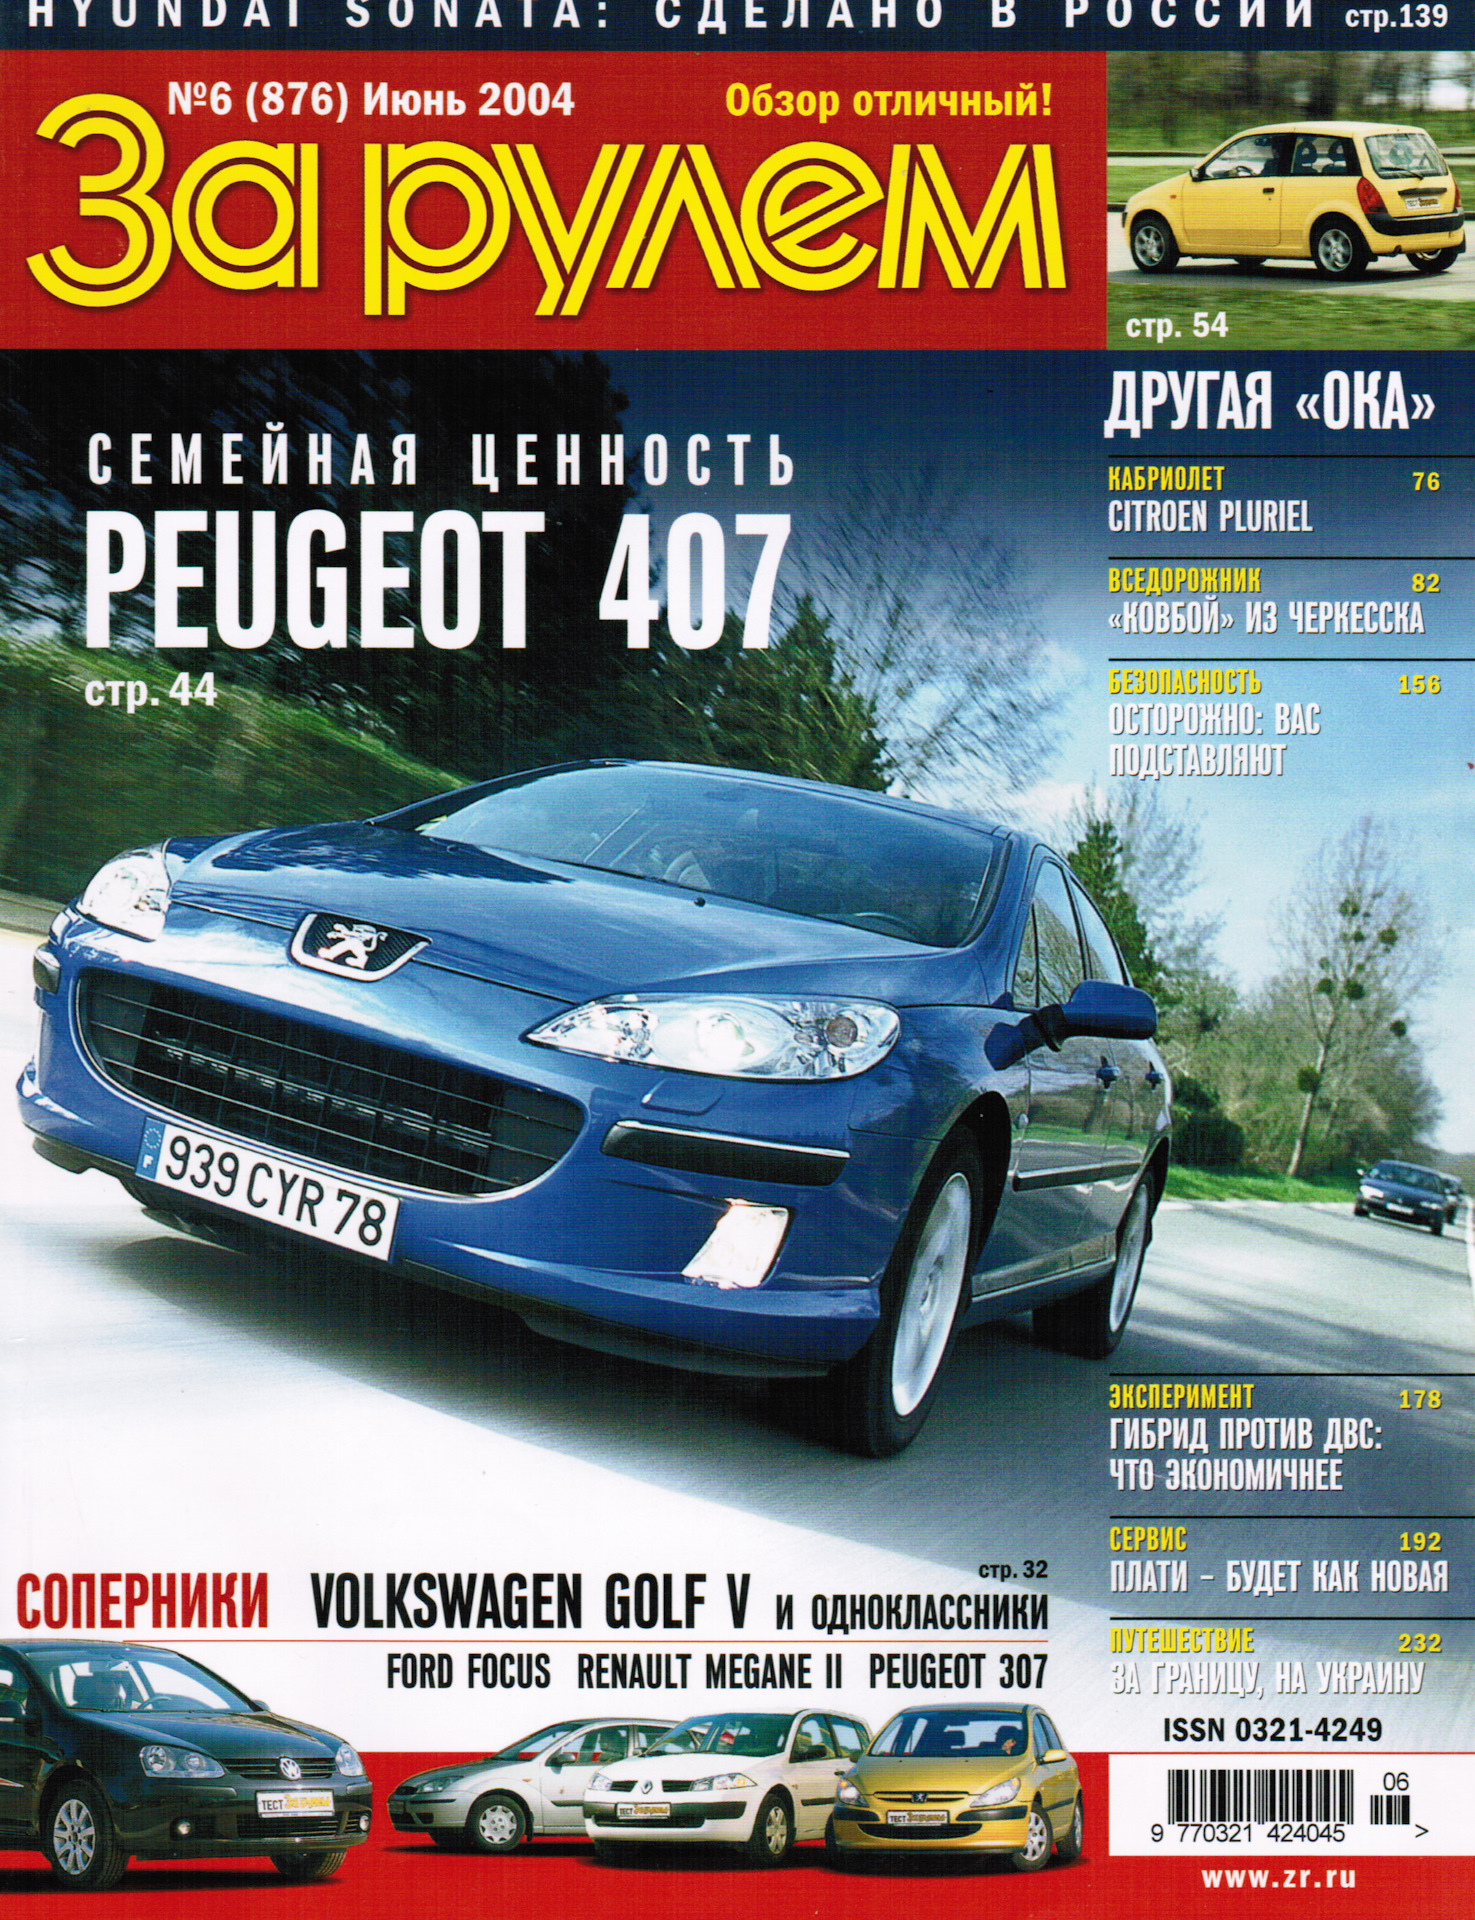 Читать последний журнал за рулем. Журнал за рулём 2004 год. Автомобильный журнал за рулем 2004 года. За рулем журнал июнь 2004. Журнал за рулем 2002.